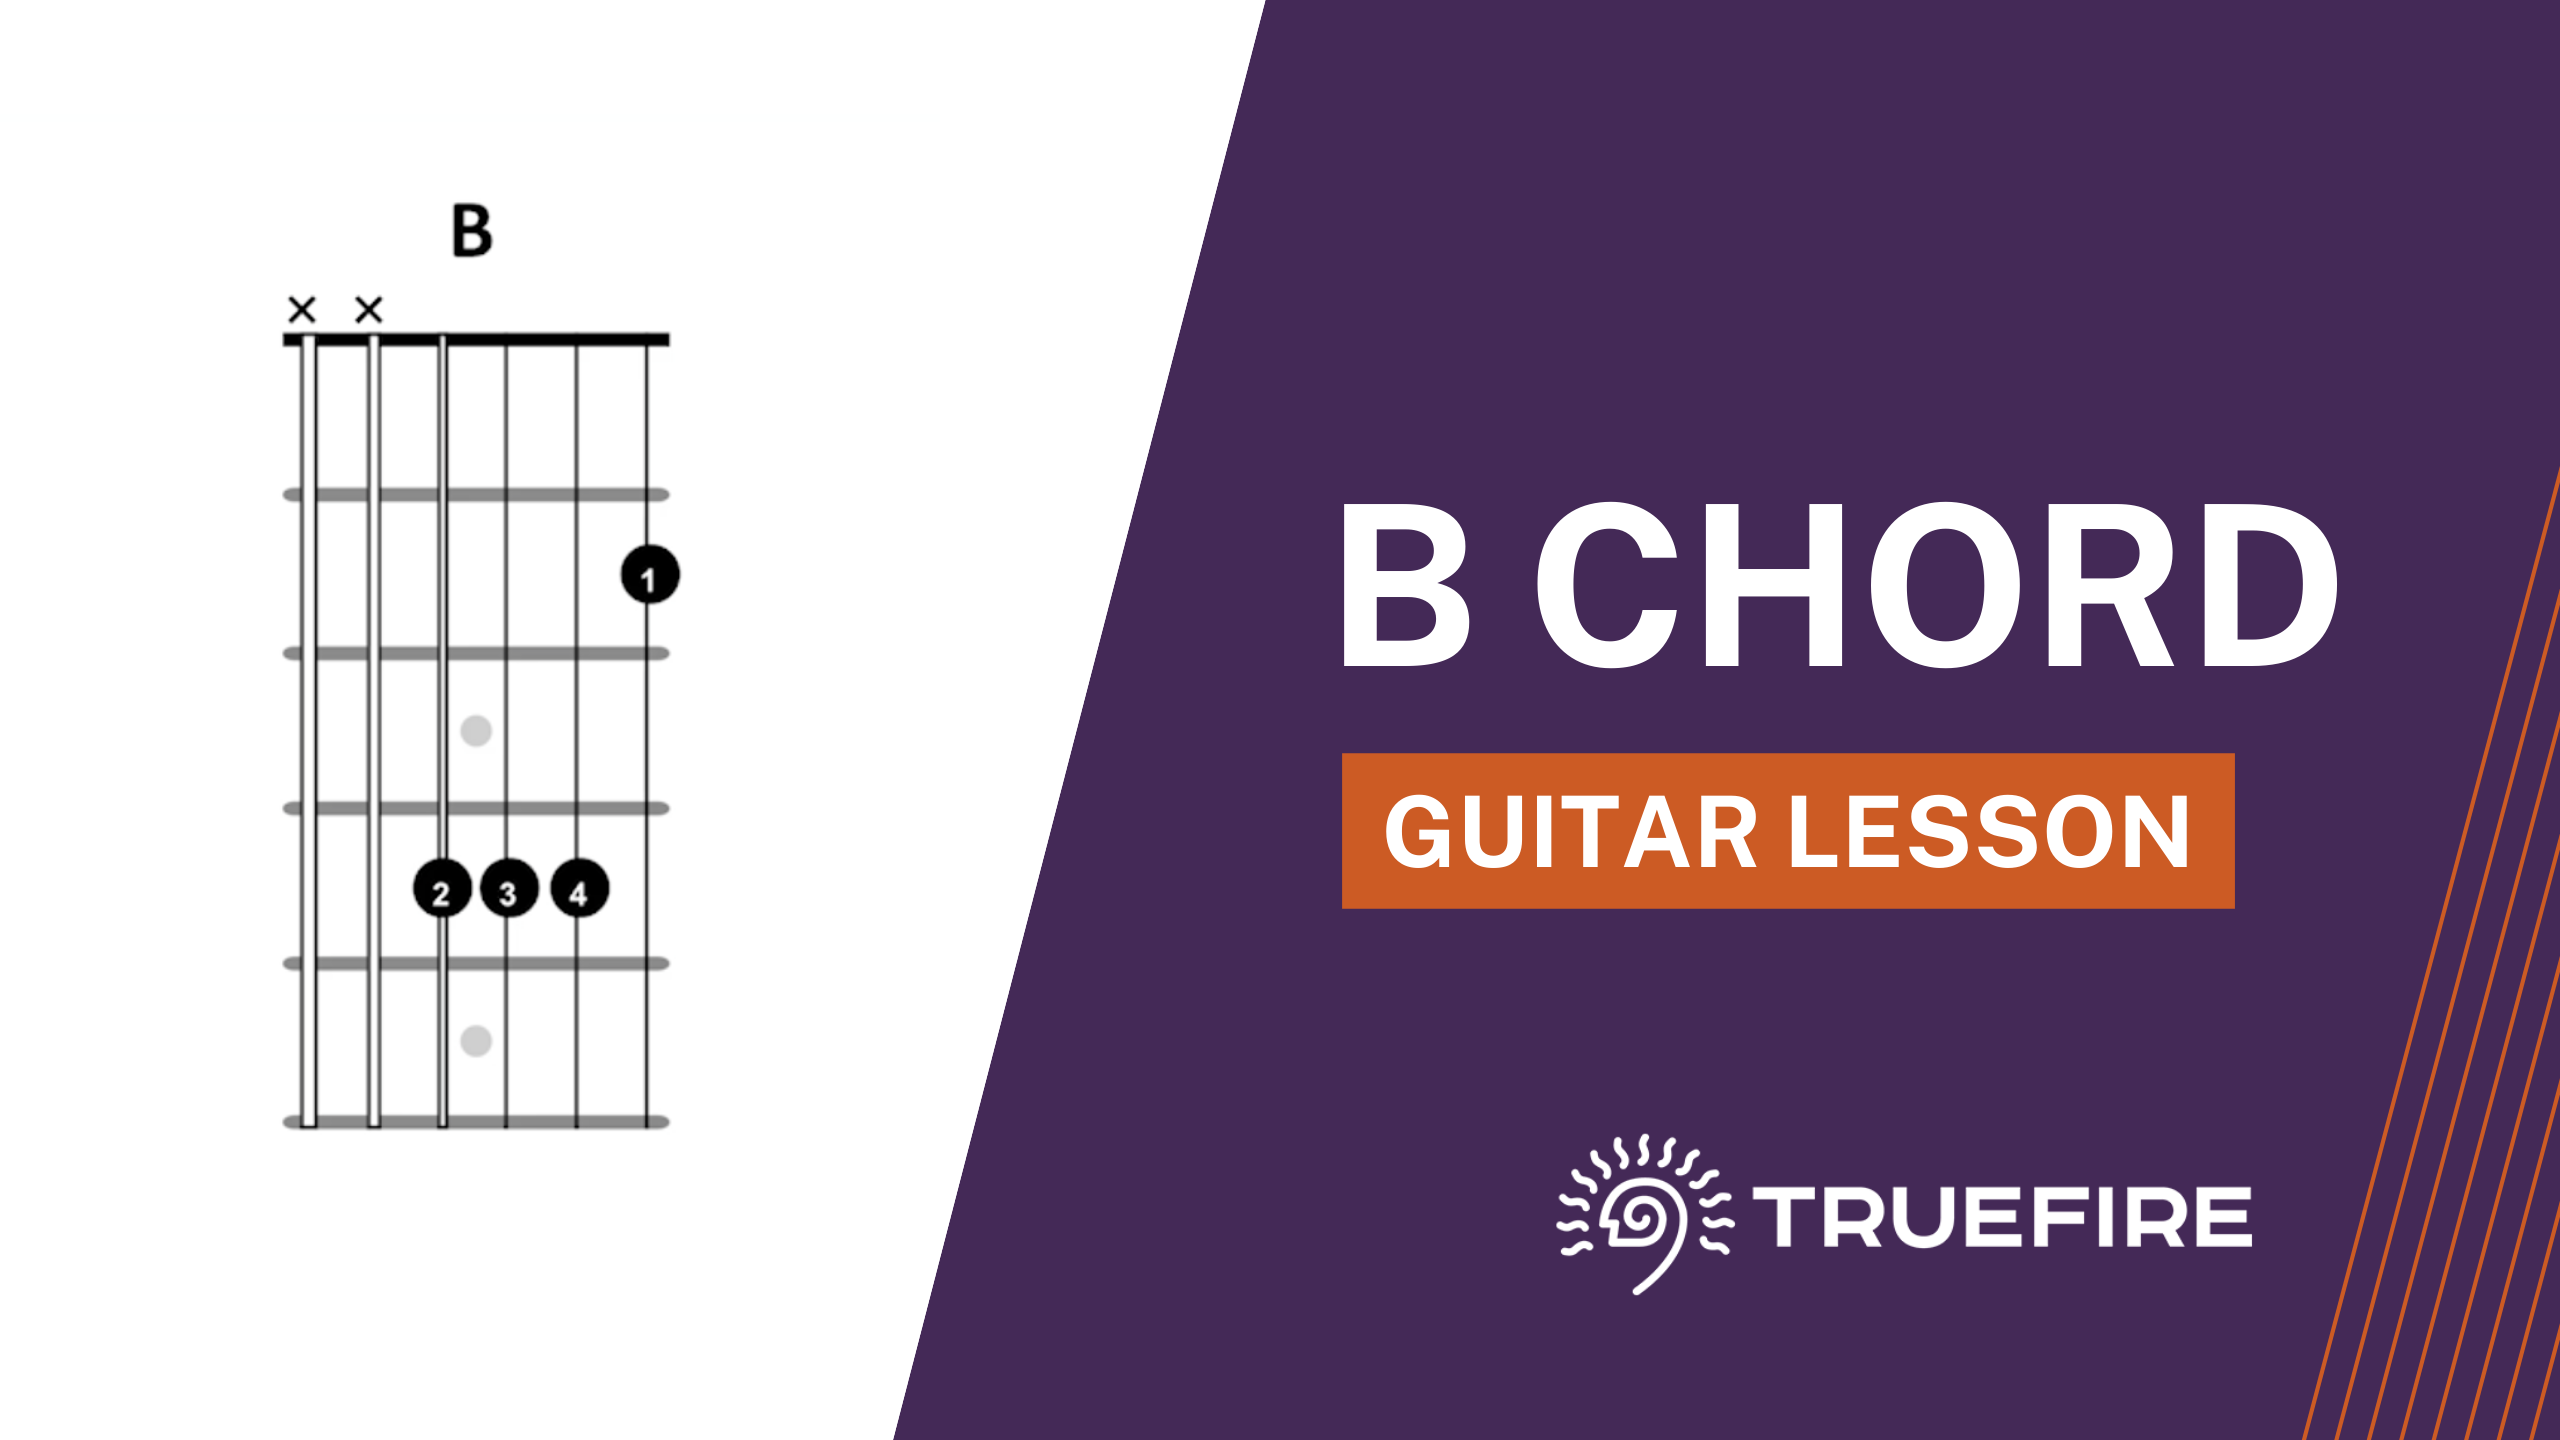 B Chord Guitar Lesson